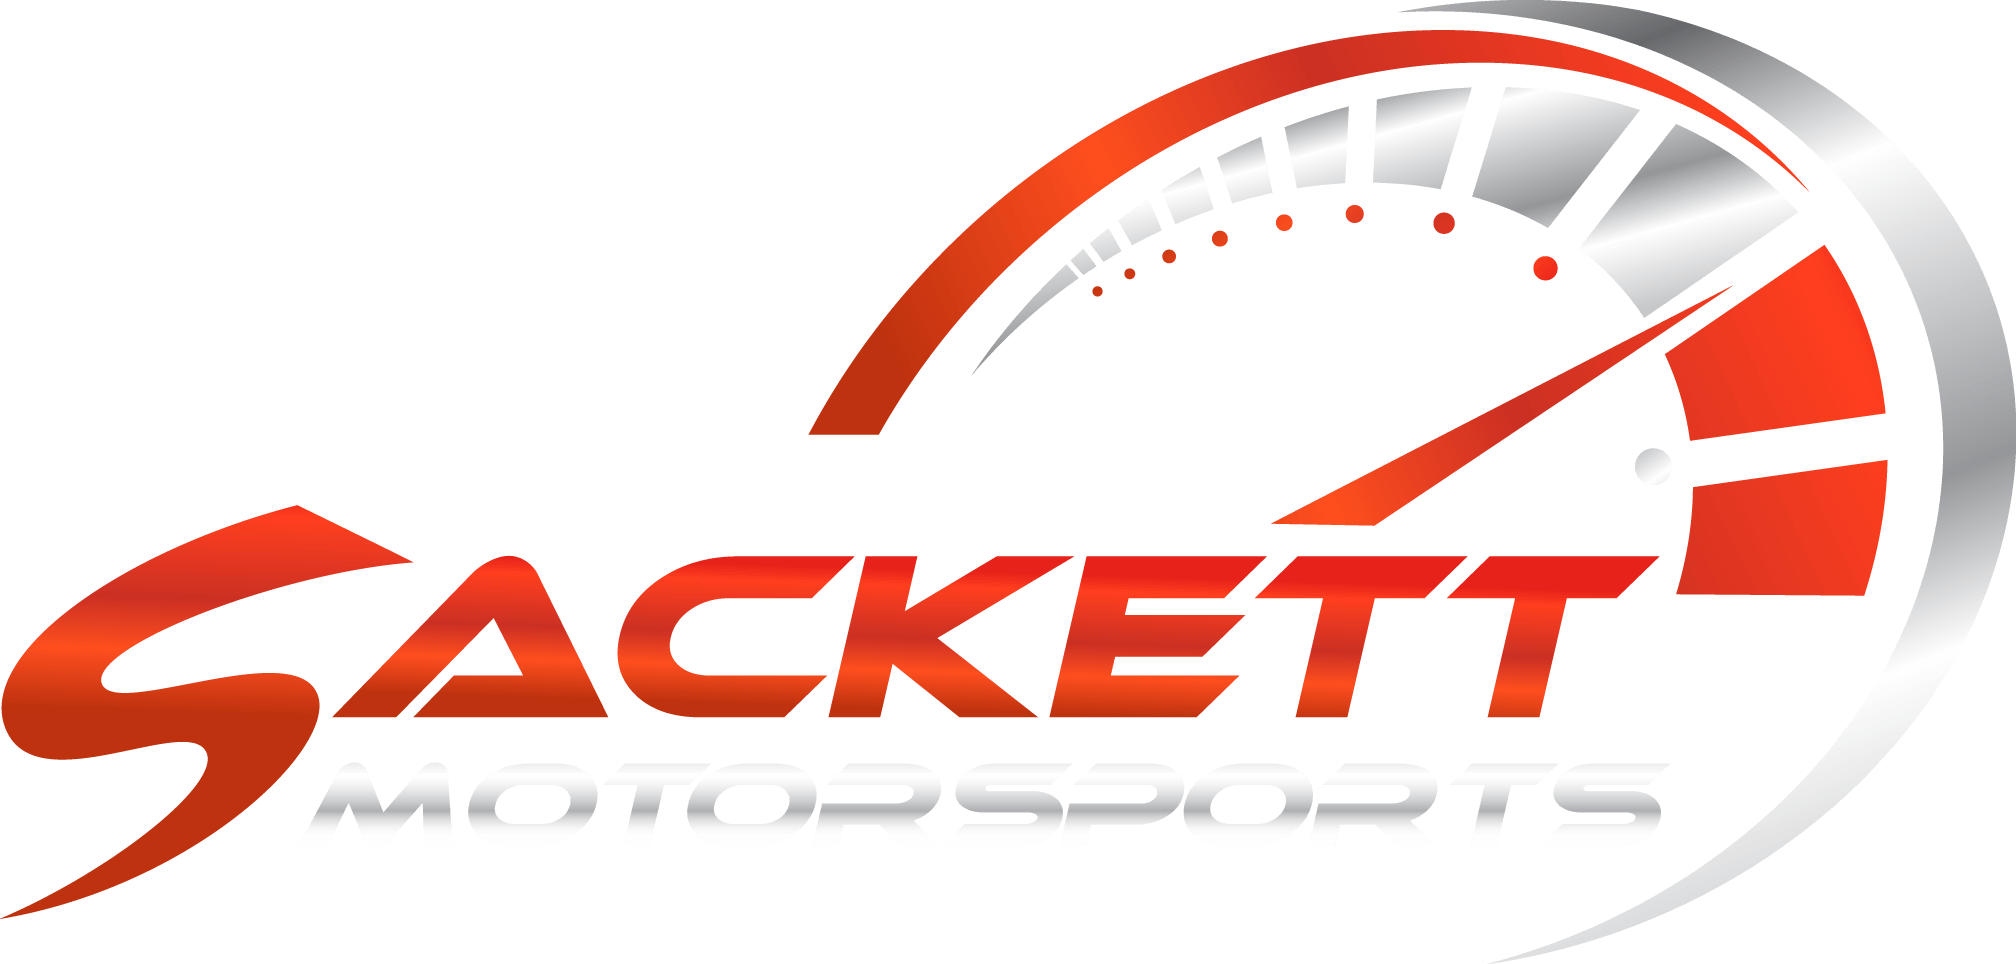 Sackett Motorsports Logo